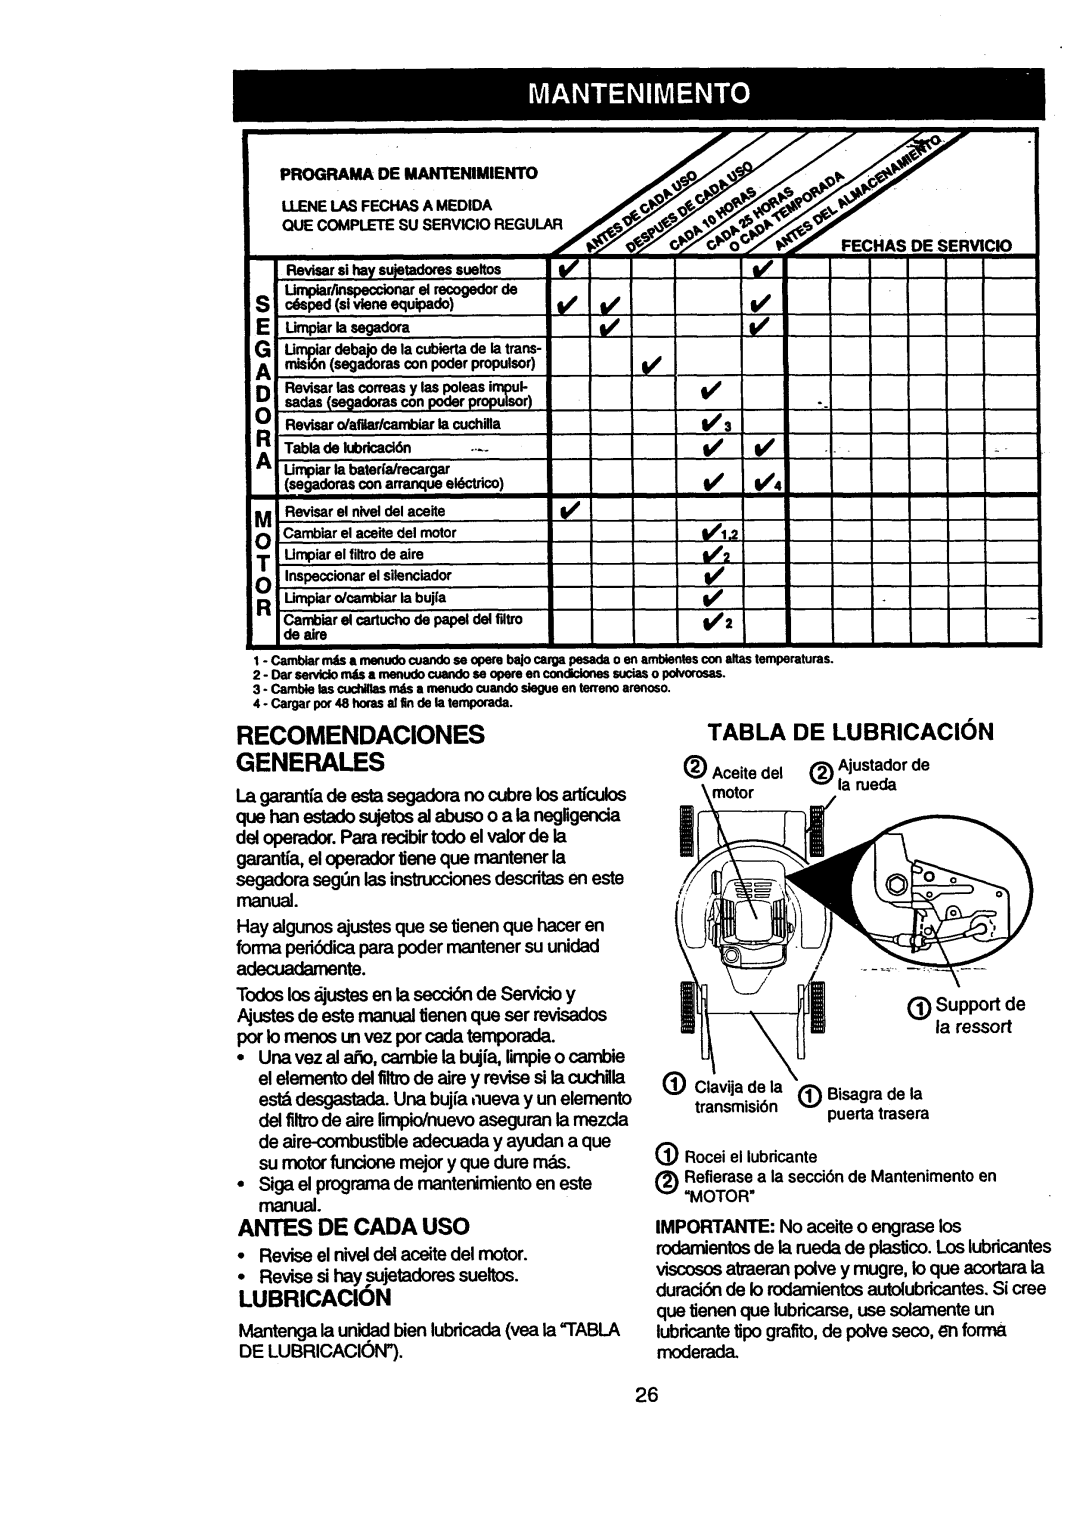 Craftsman 917.377631 owner manual Recomendaciones Generales, Antes De Cada Uso, LUBRICAClON, Tabla De Lubricacion 